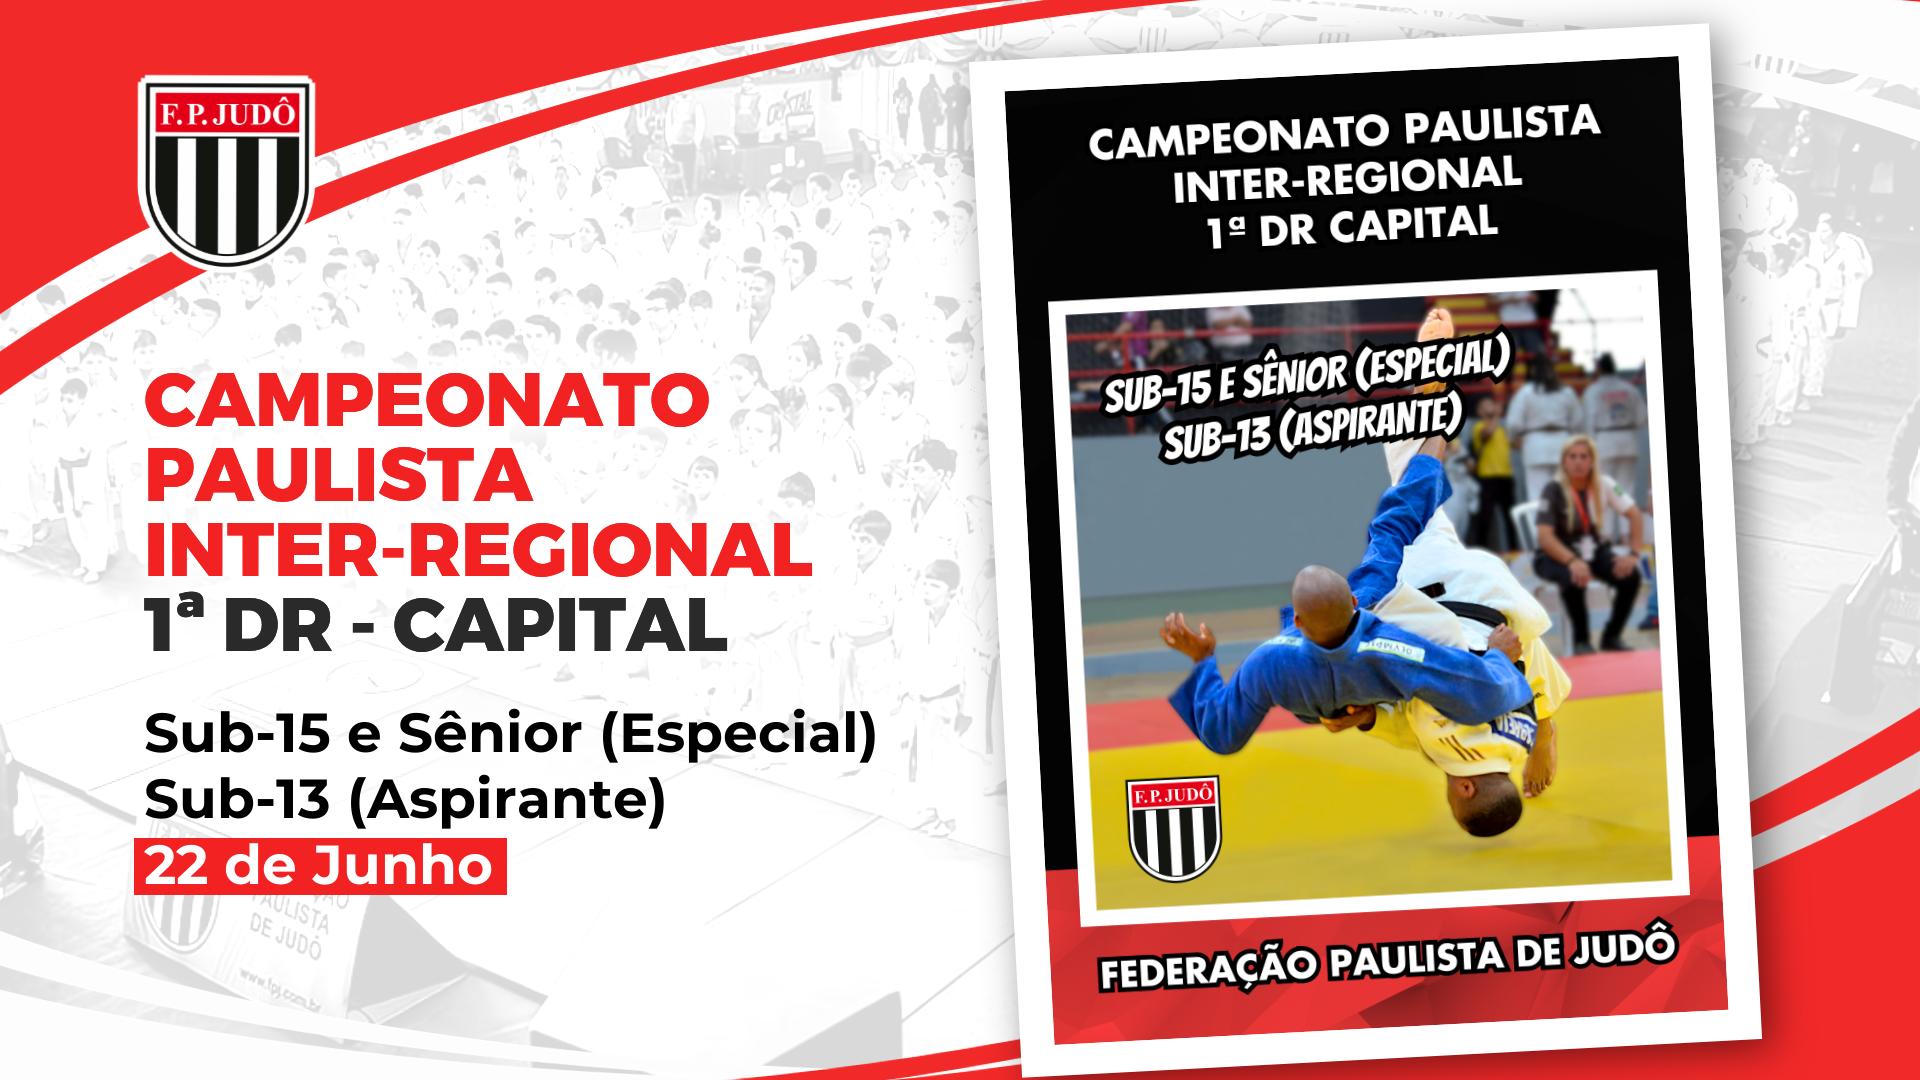 Paulista Inter-regional Capital sub15 senior sub13